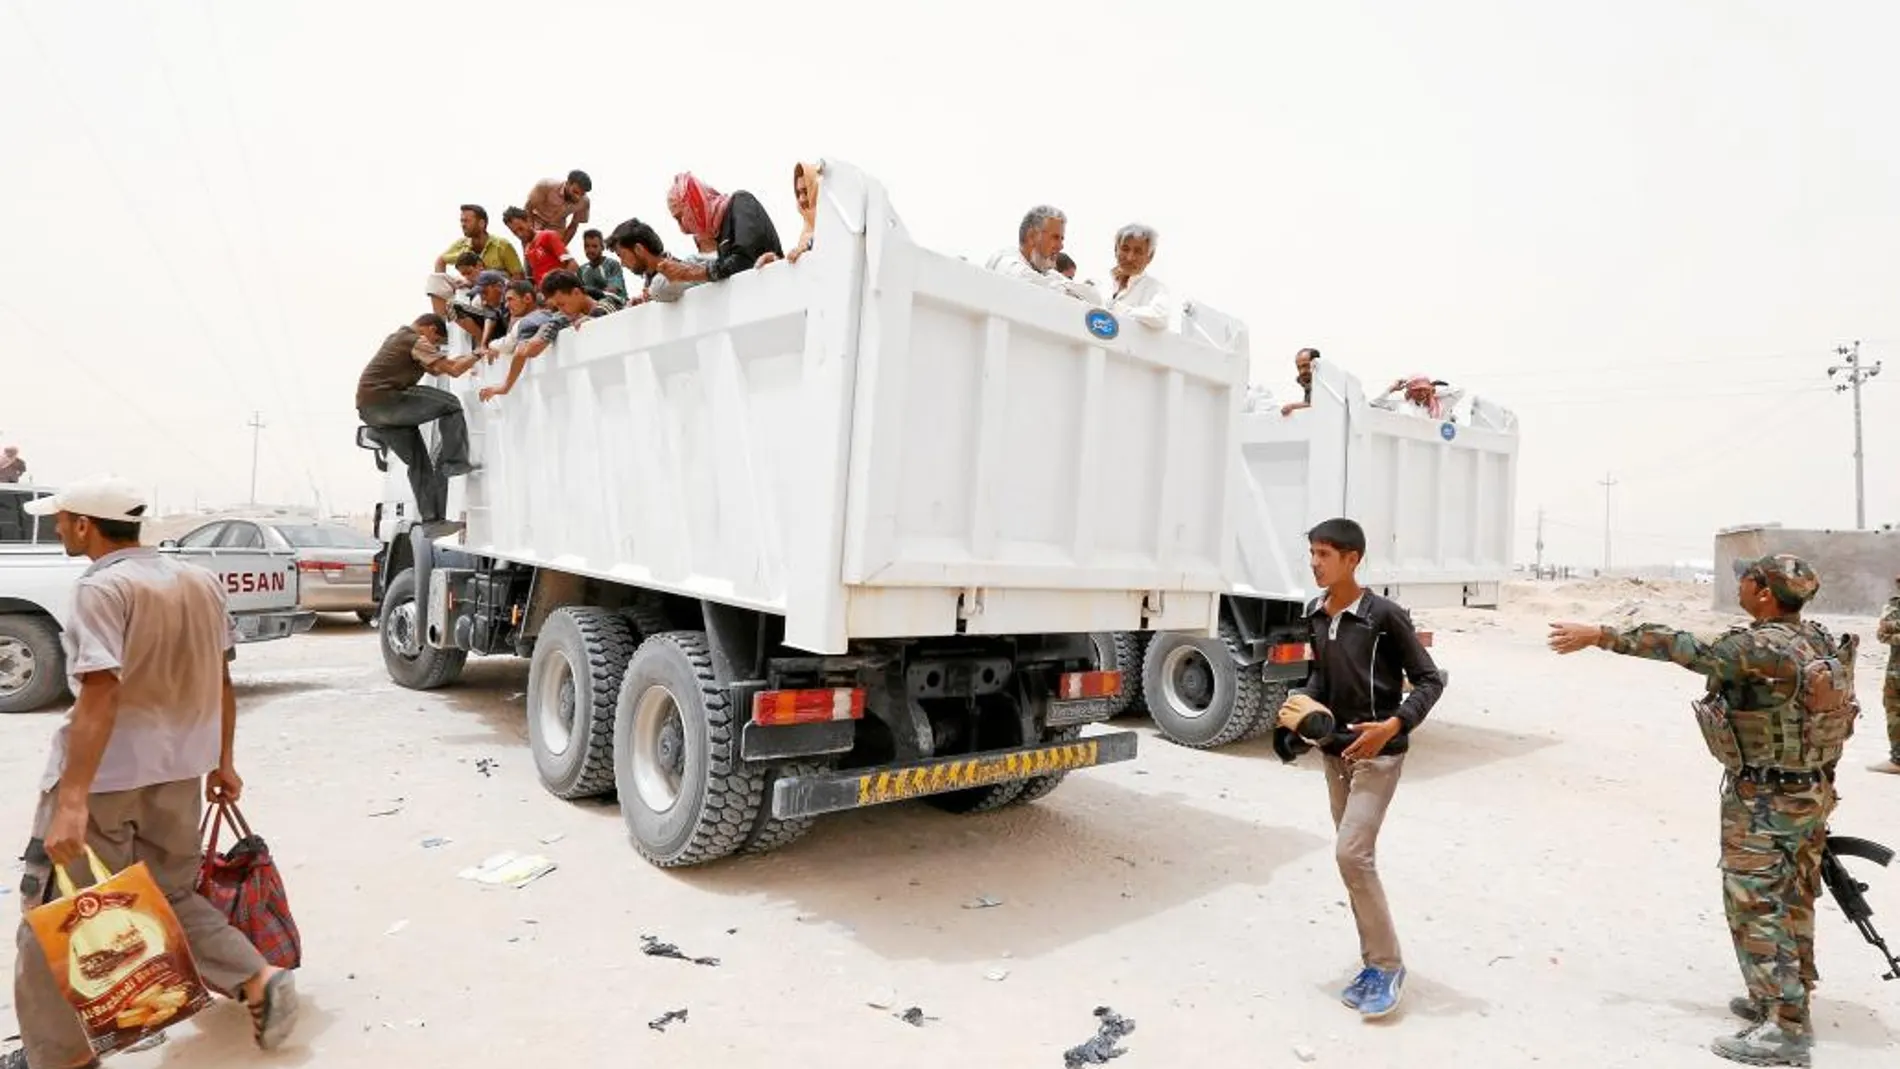 Un grupo de refugiados procedente de Faluya llega al campo de Ameriyat huyendo del Estado Islámico